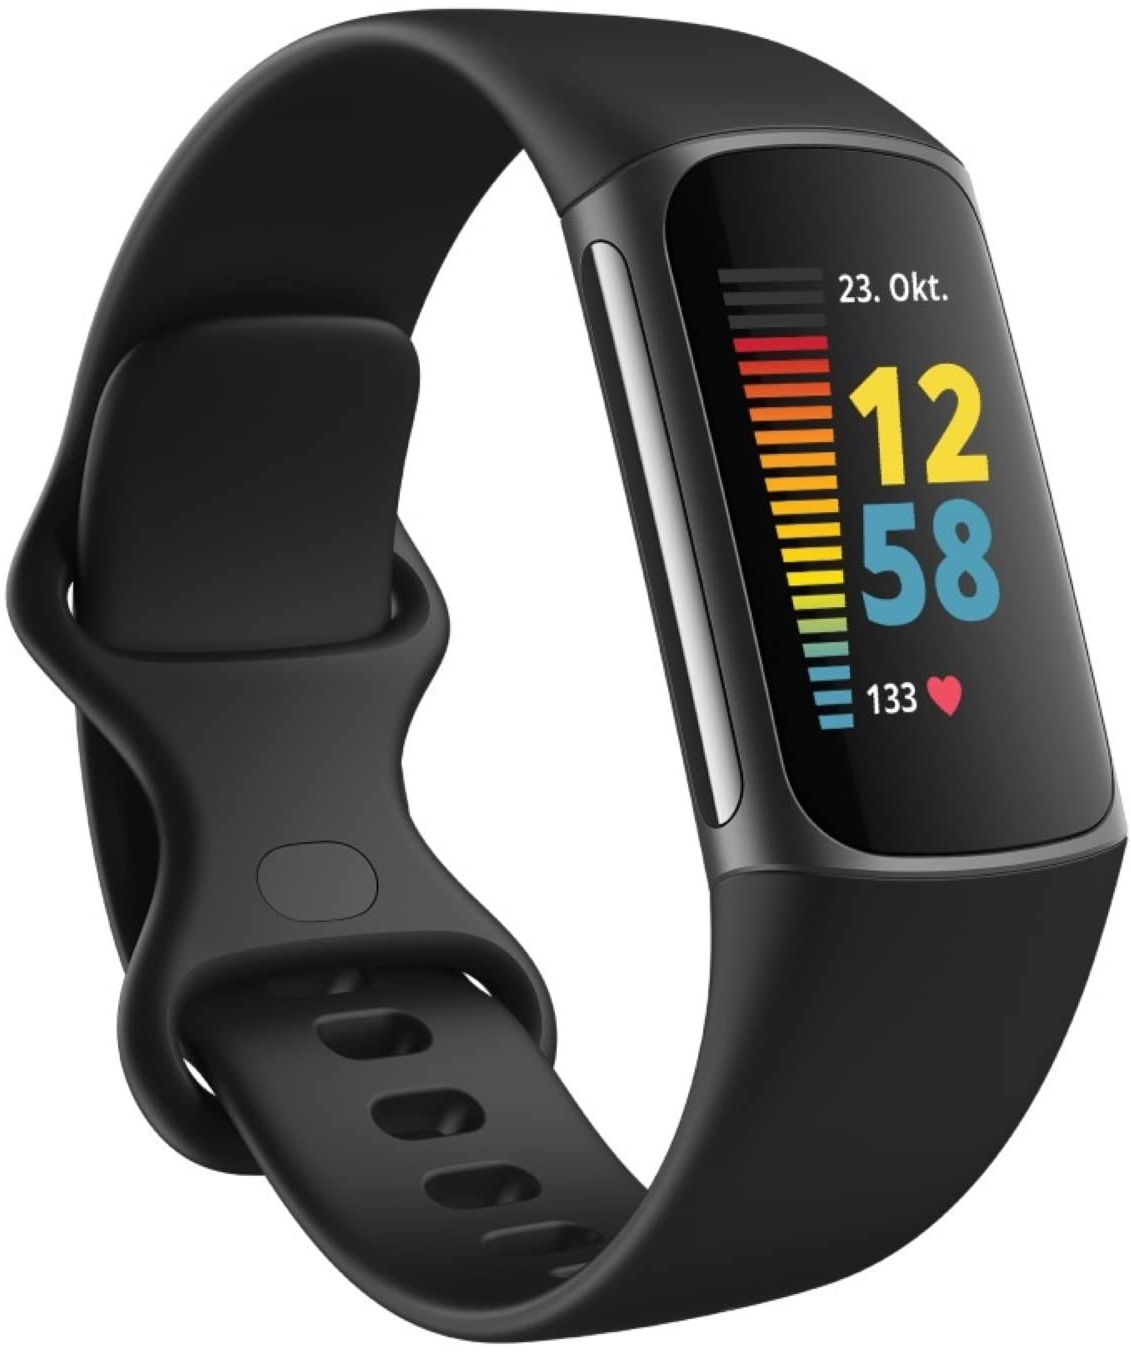 Fitbit Charge 5 by Google, Gesundheits- und Fitness Tracker Damen / Herren, bis zu 7 Tage Akkulaufzeit, Tagesform-Index, 20+ Trainningsmodi, EKG-Funktion & Stressmanagement, Fitnessuhr, Android / iOS